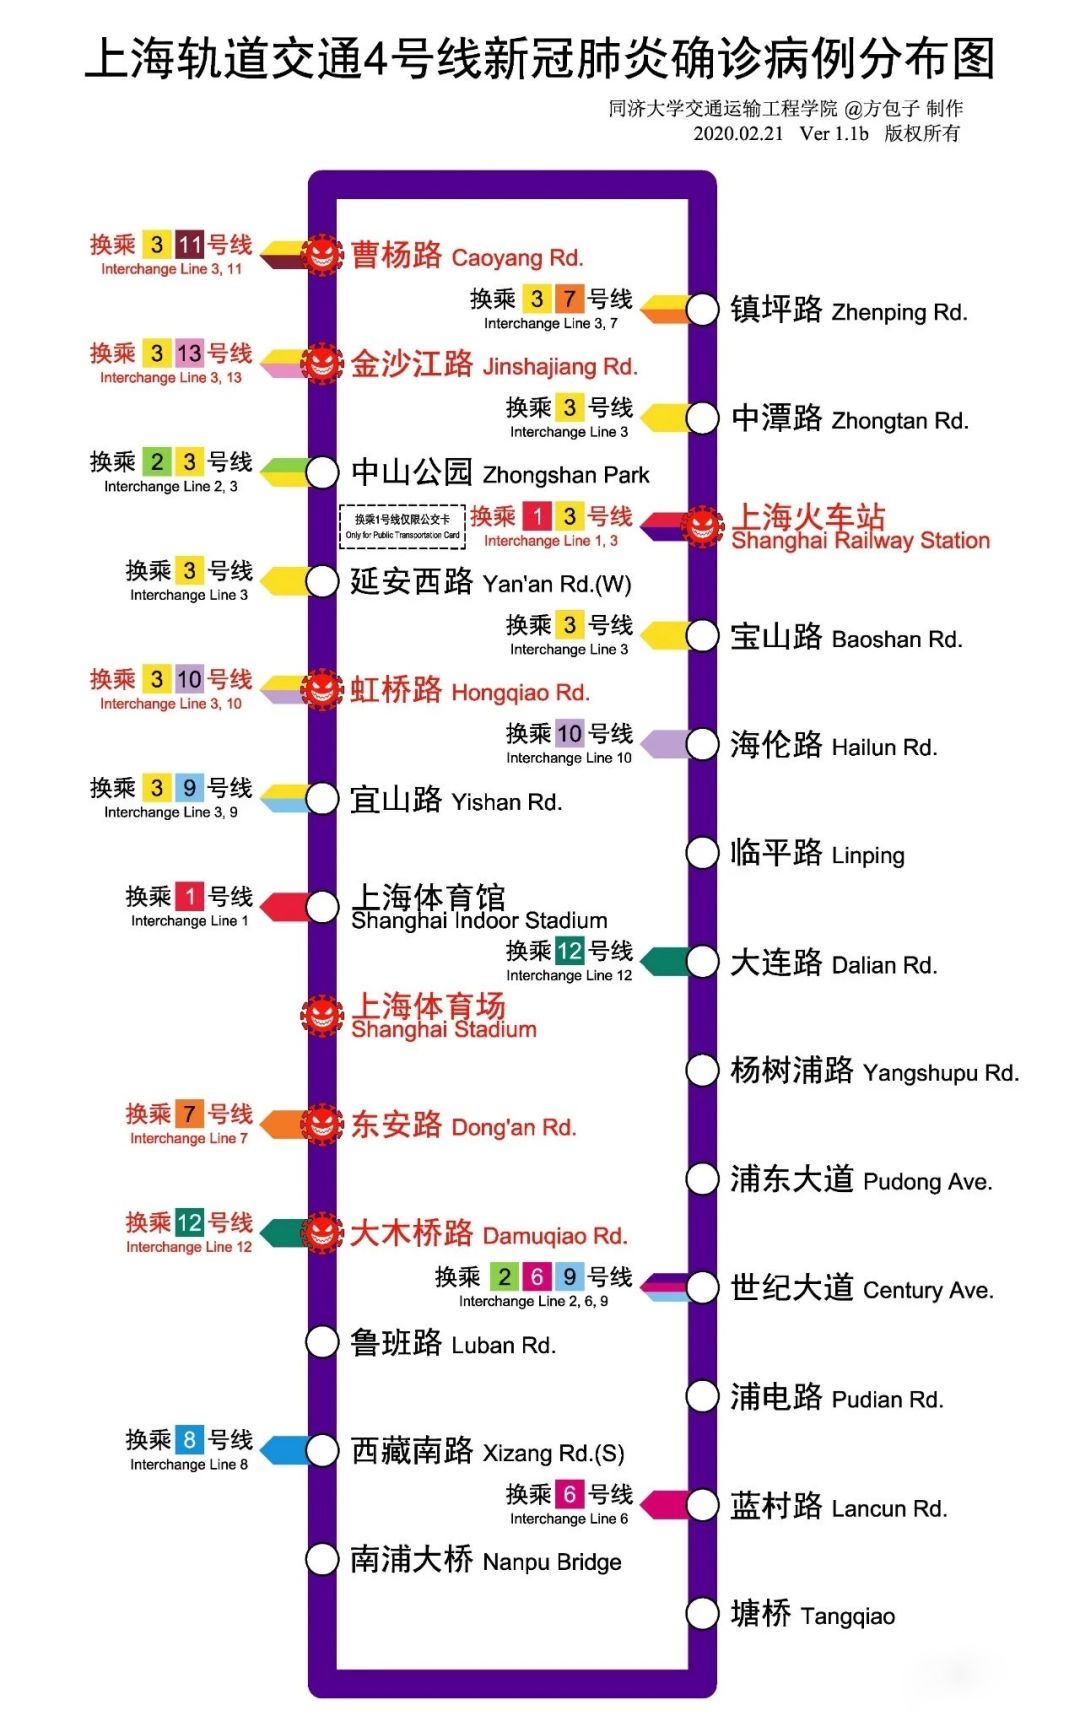 上海疫情路线图图片